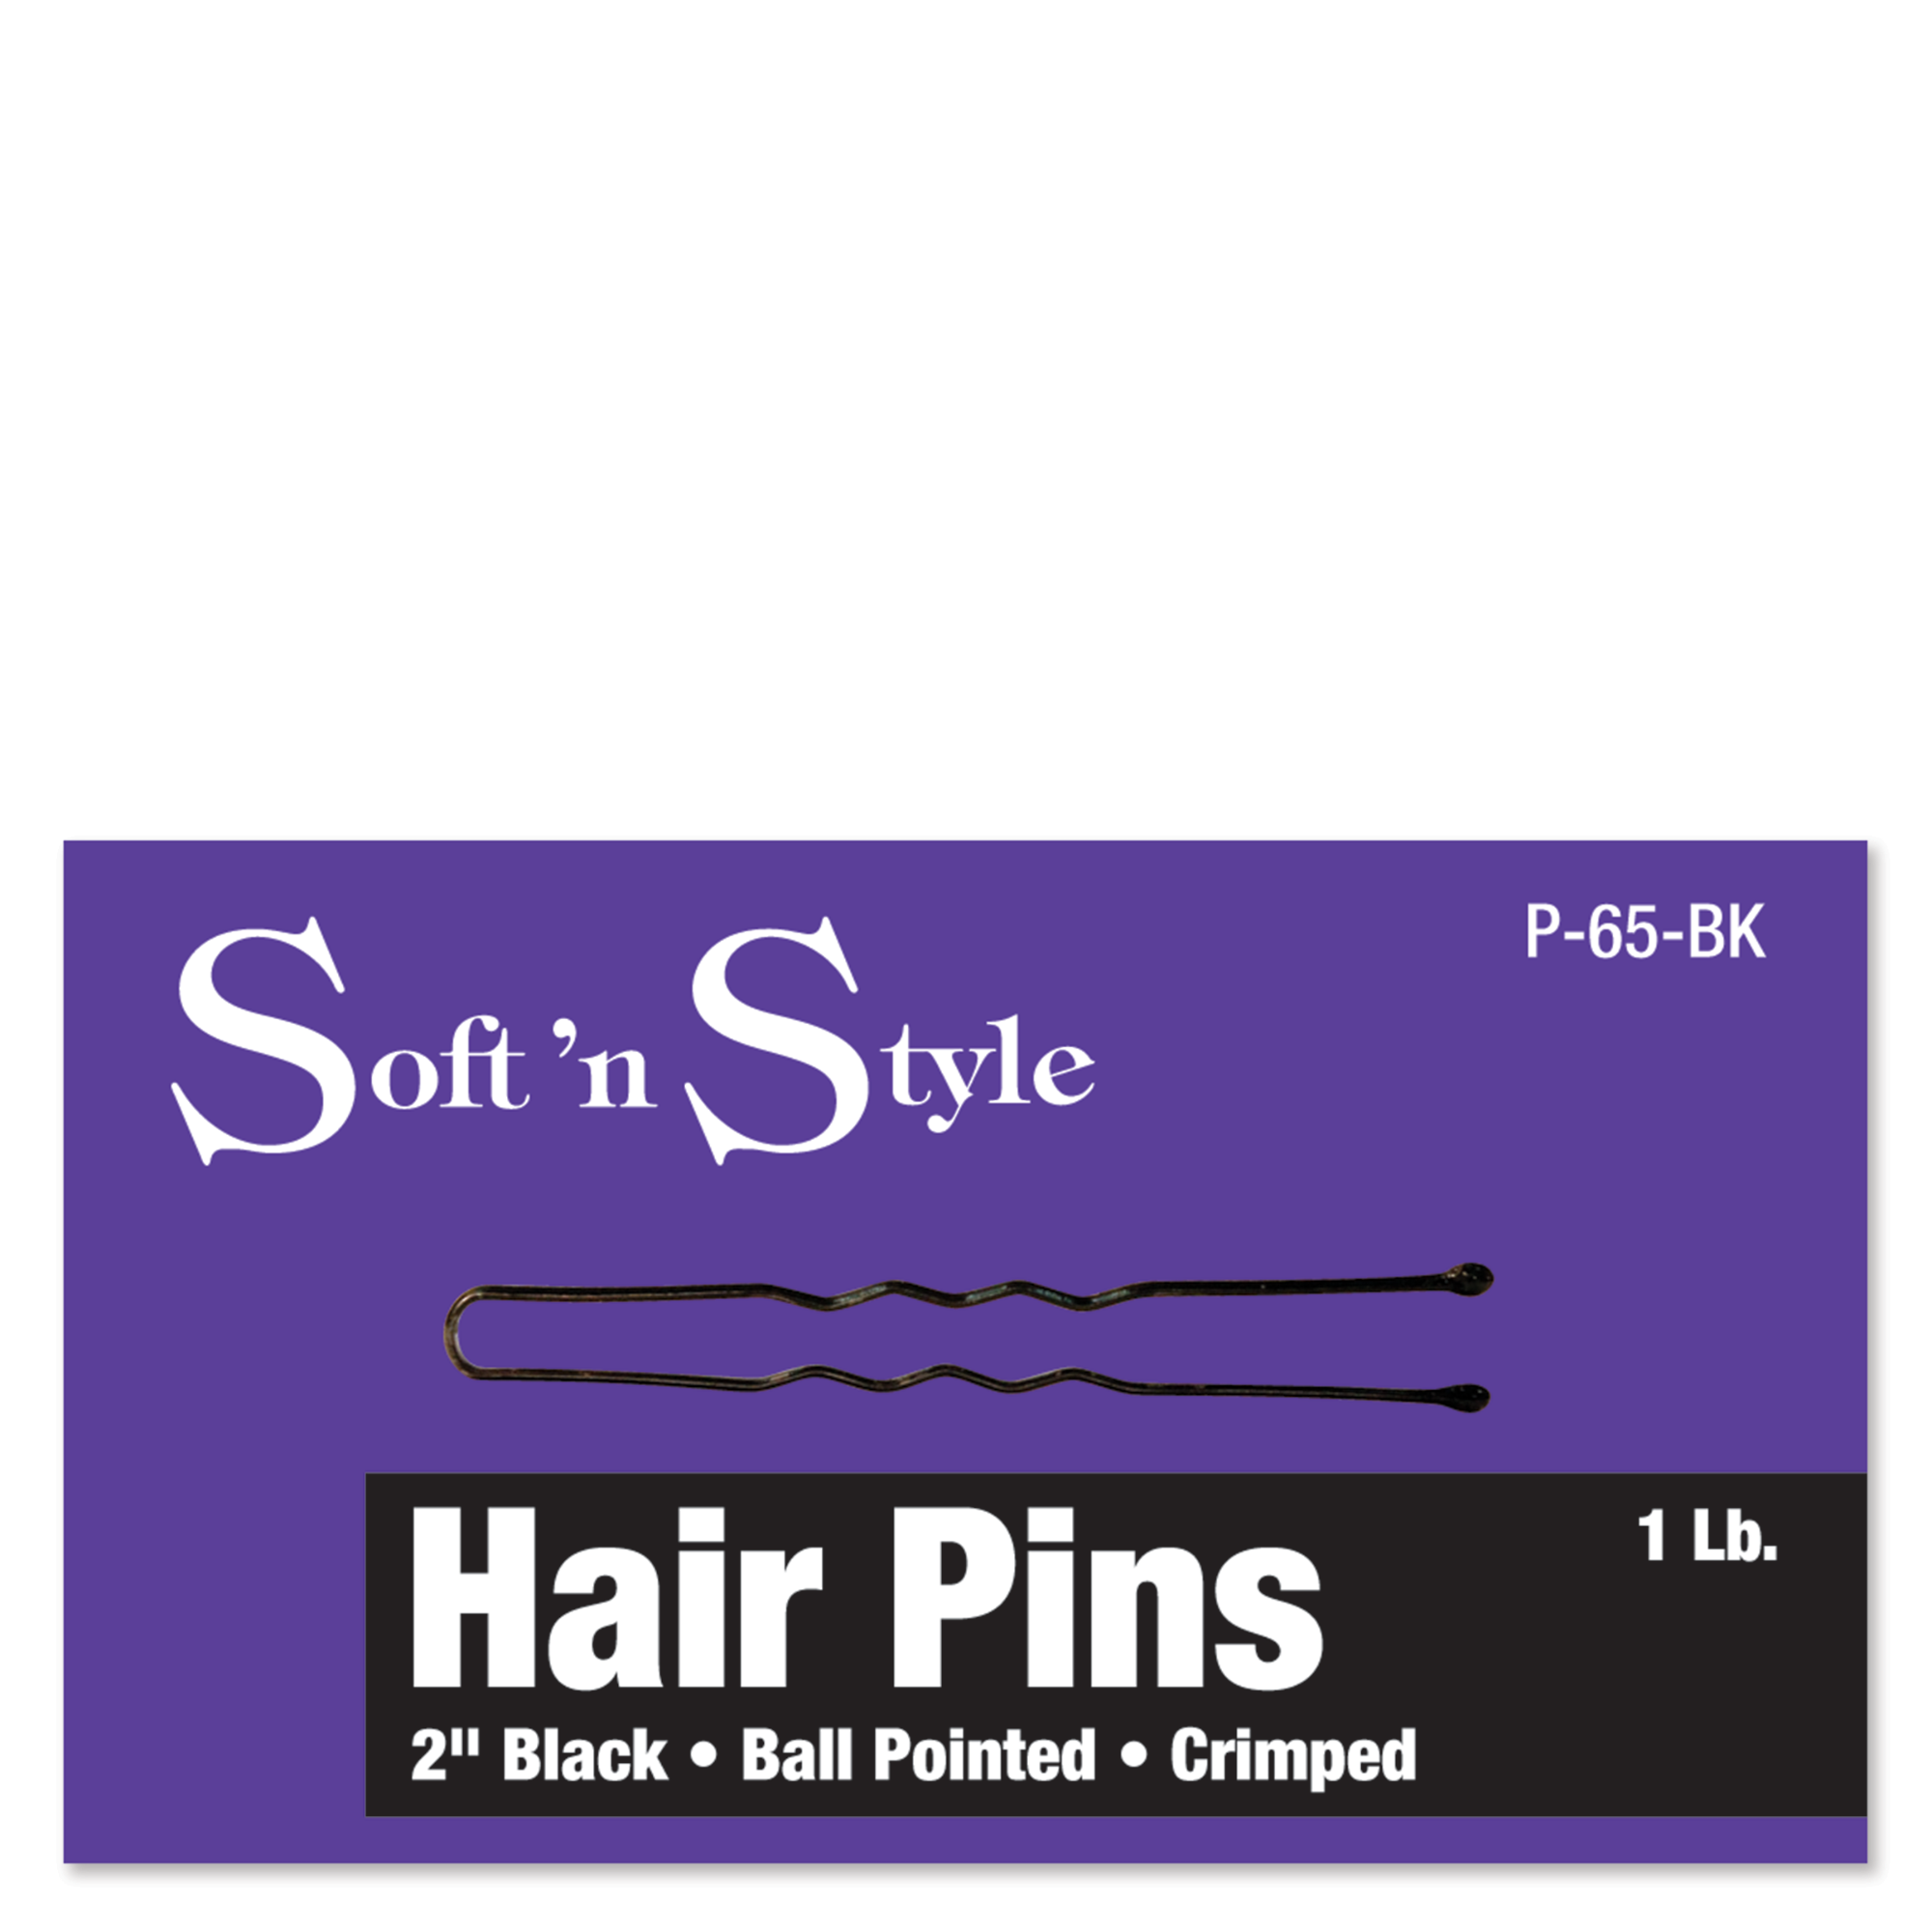 Hair Pins, Black, 1 lb. box - 2"